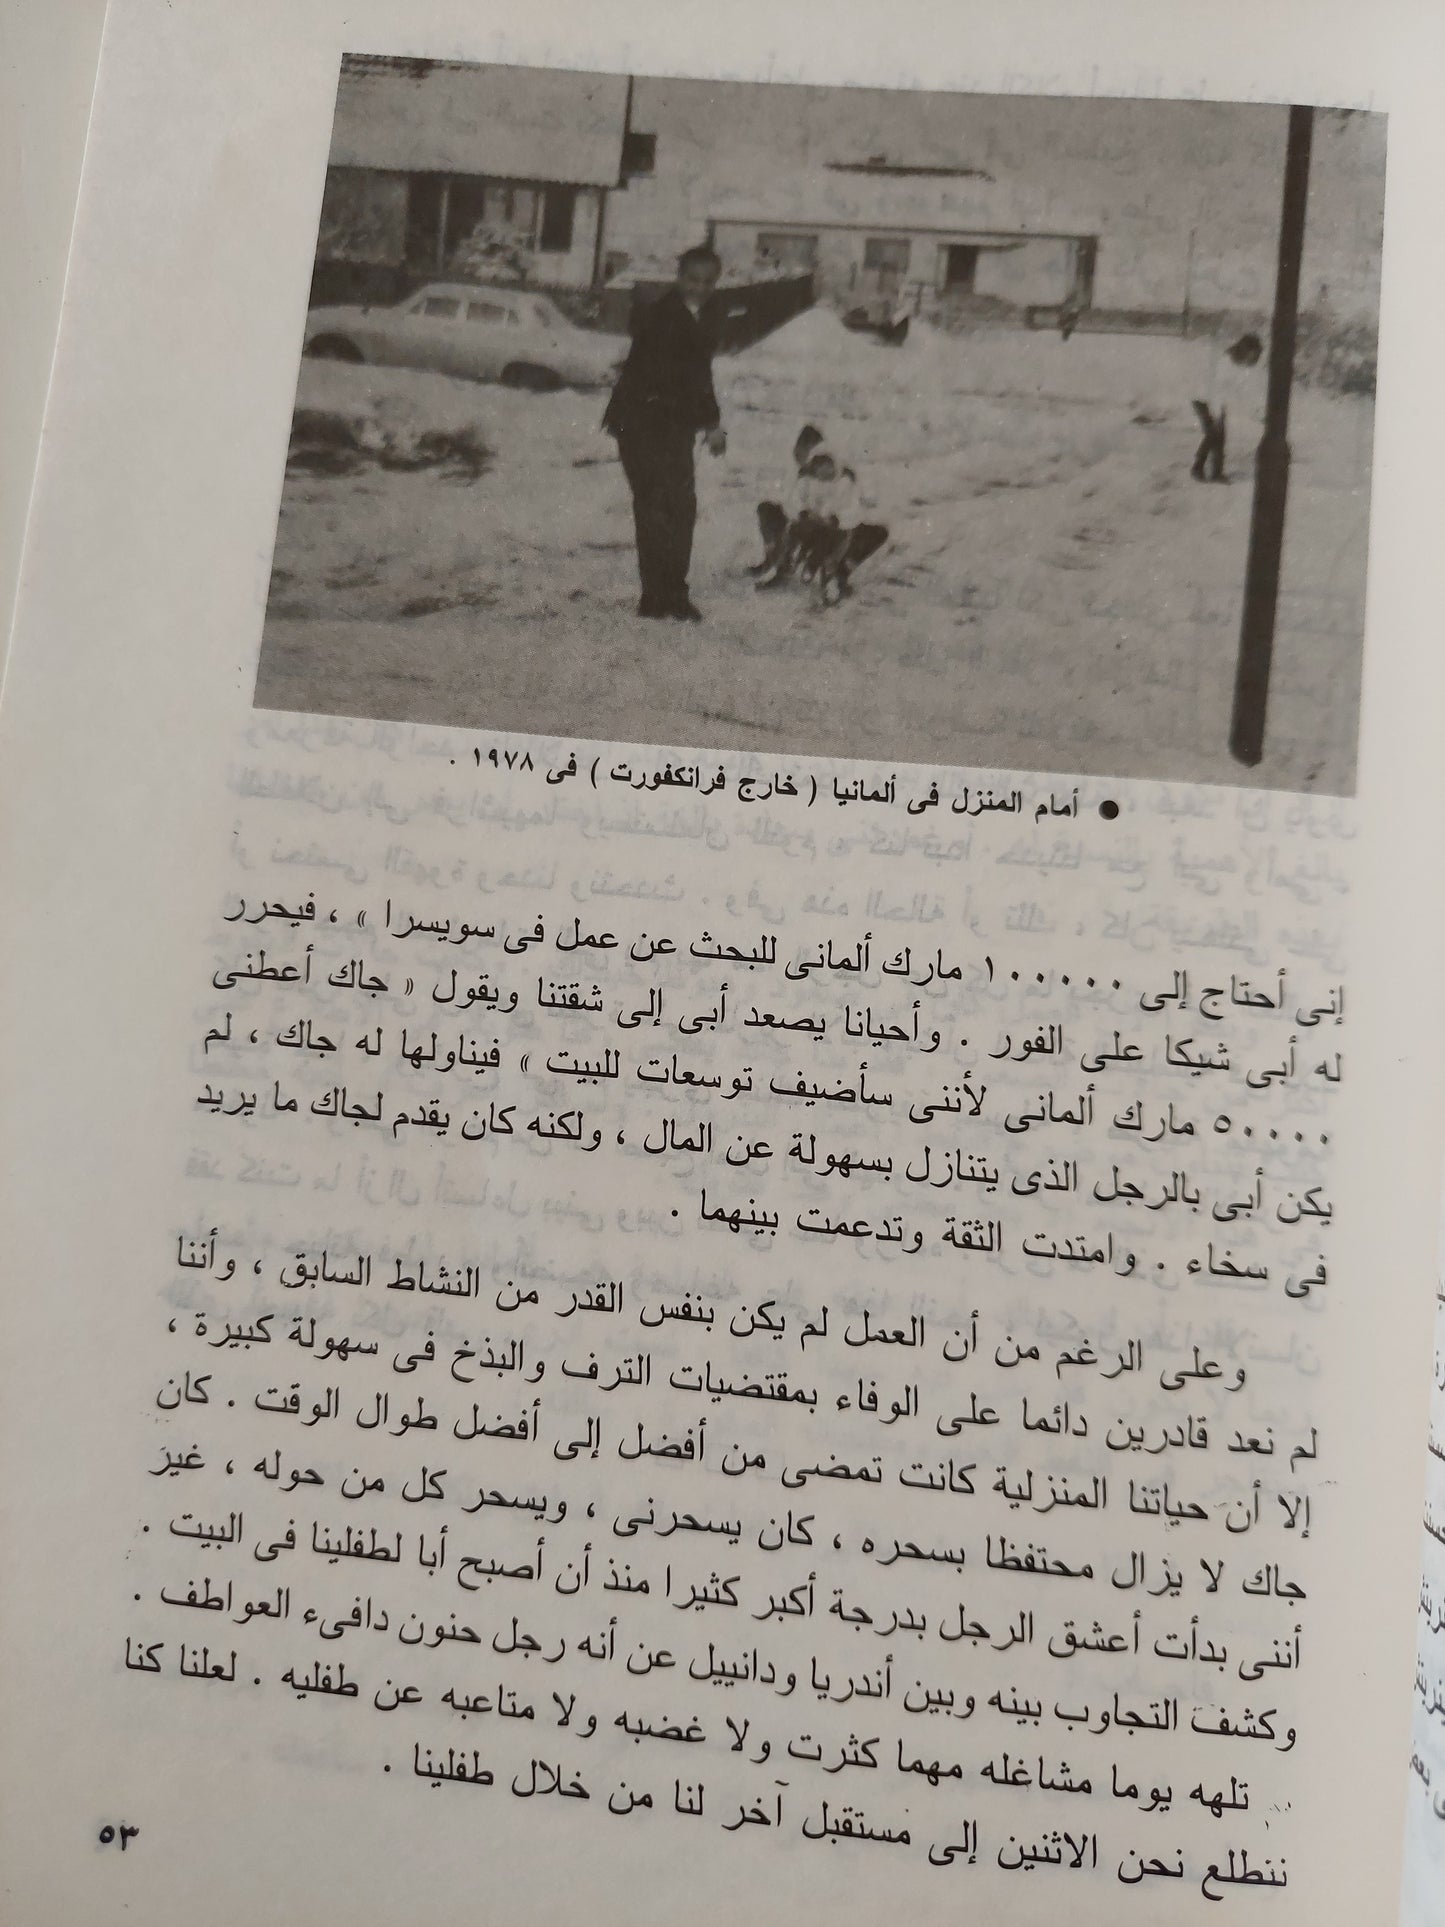 18 عاماً خداعاً لإسرائيل .. قصة الجاسوس المصري رفعت الجمال / مع ملحق خاص بالوثائق